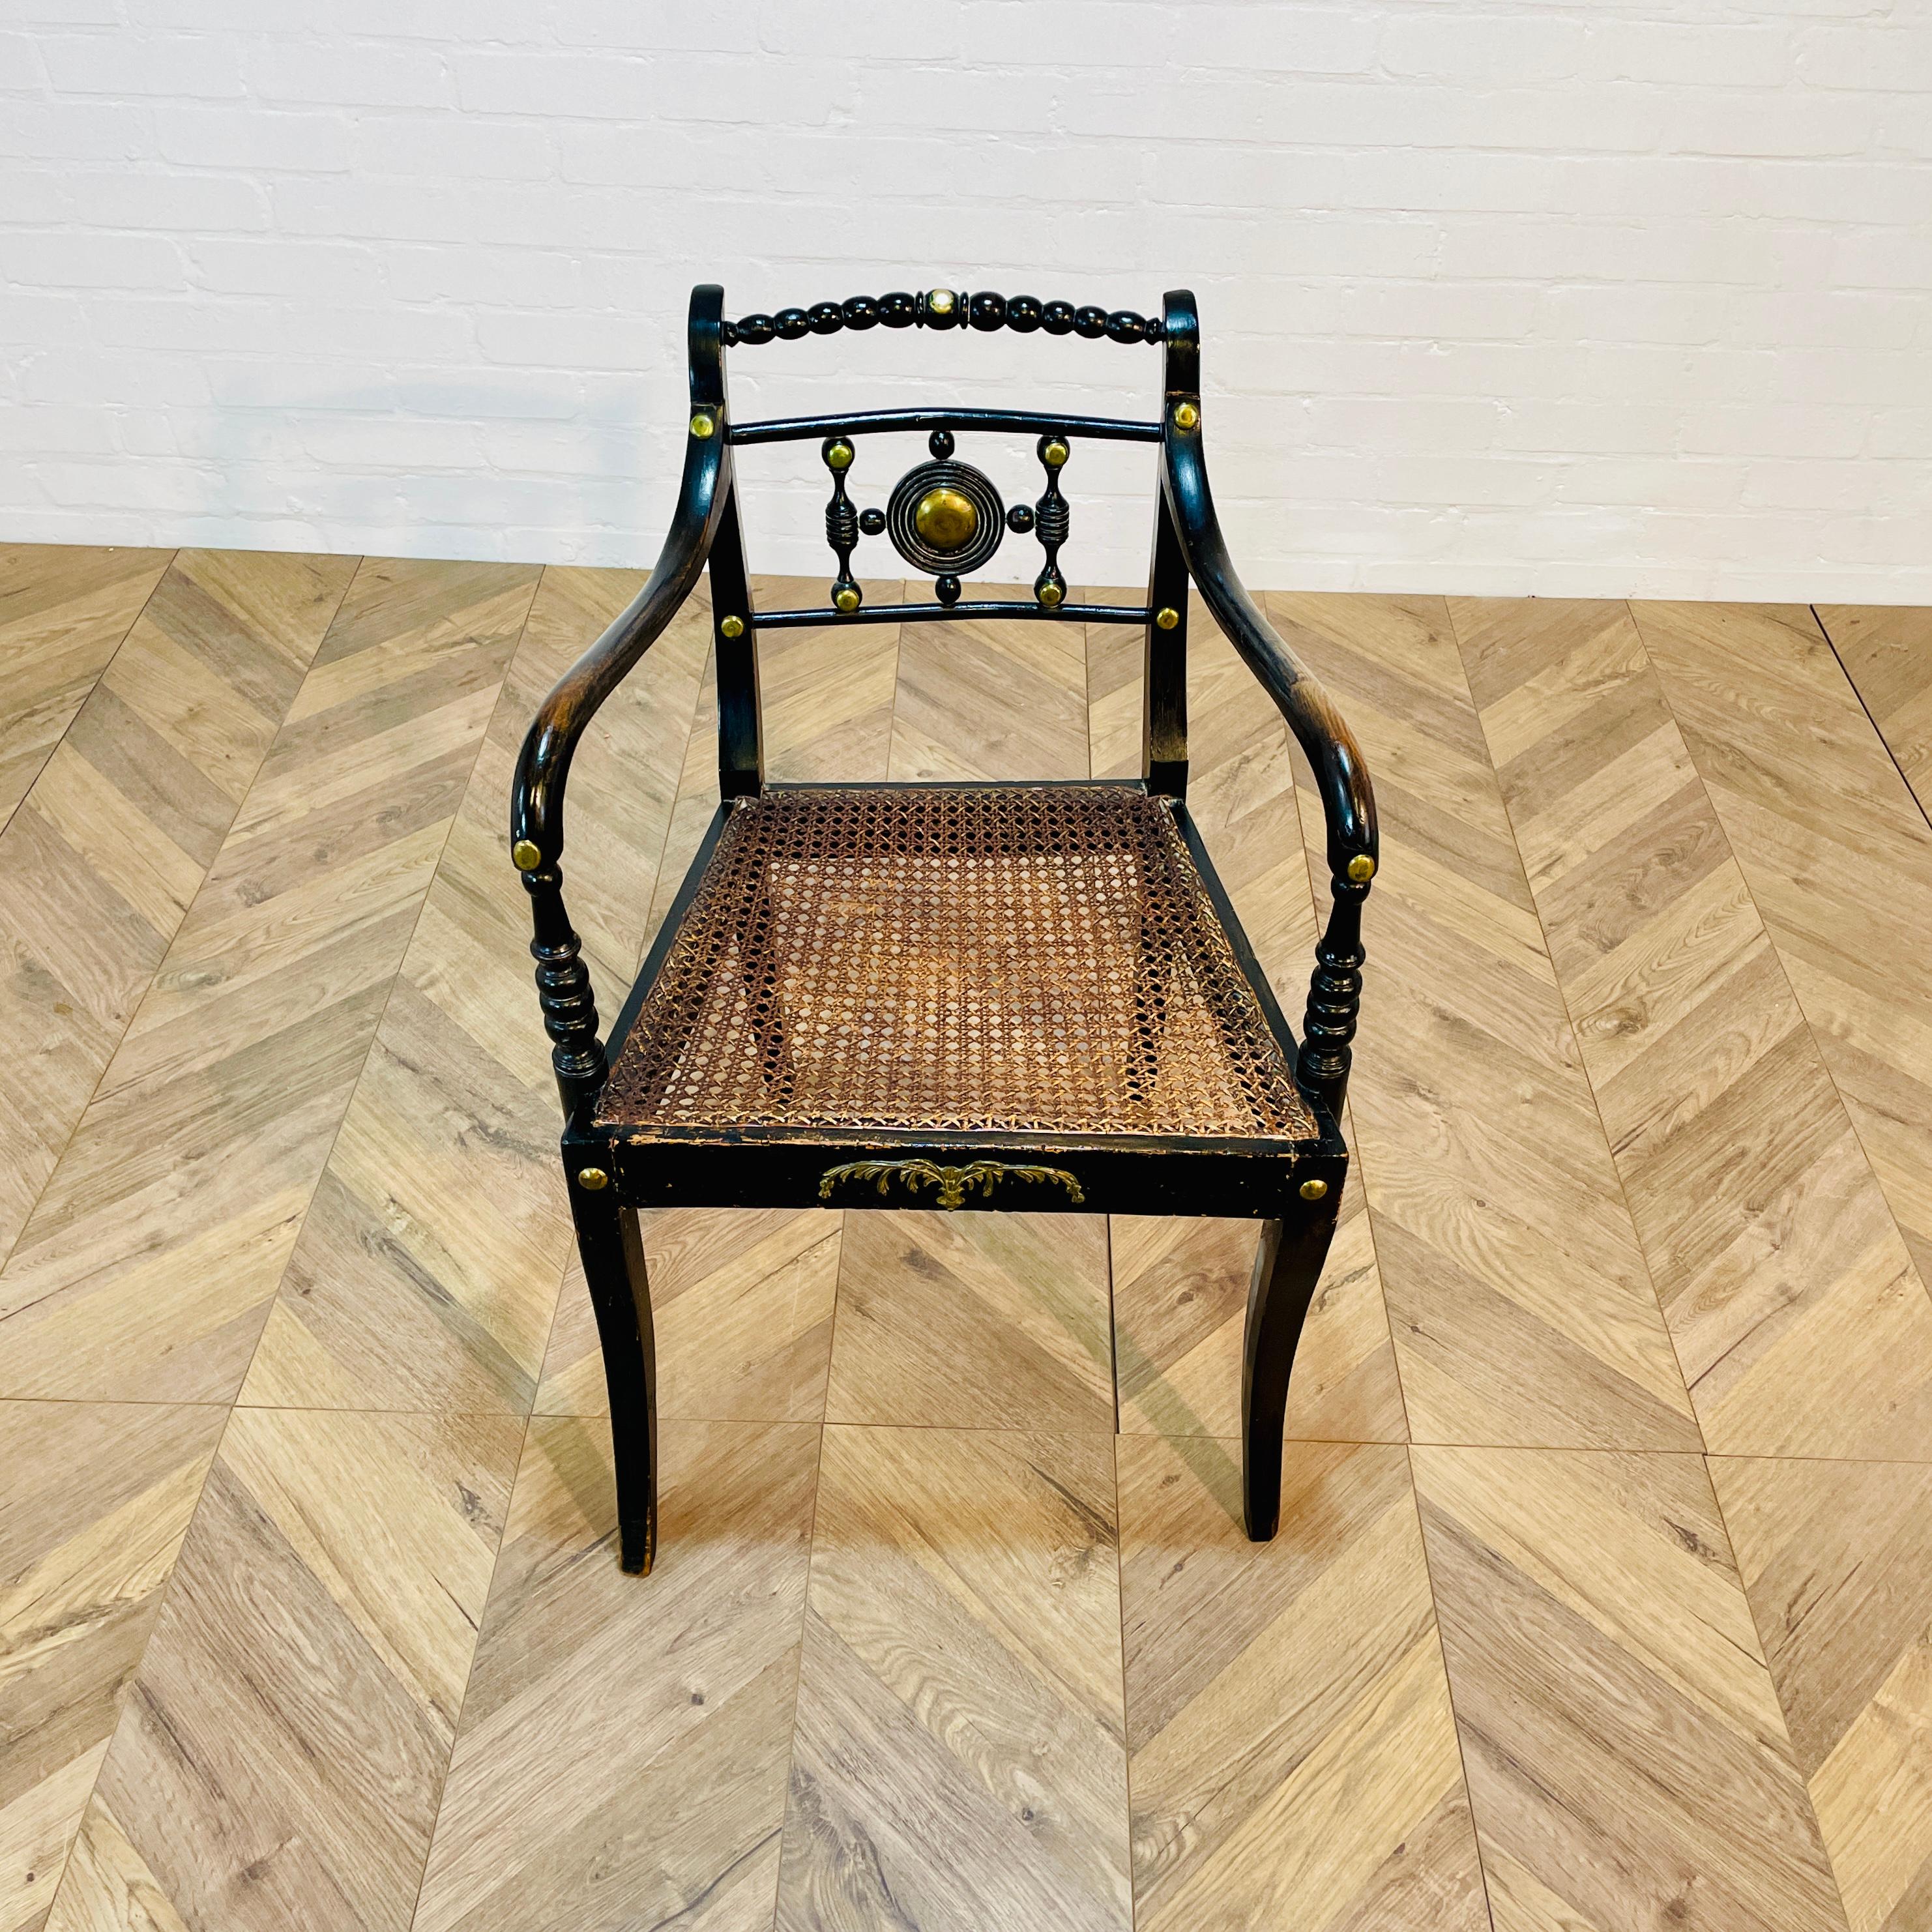 Ancienne chaise d'appoint en bergère ébonisée de style Régence anglaise, début du 20e siècle.

La chaise présente de jolis détails dorés. Elle est en bon état et très solide.
